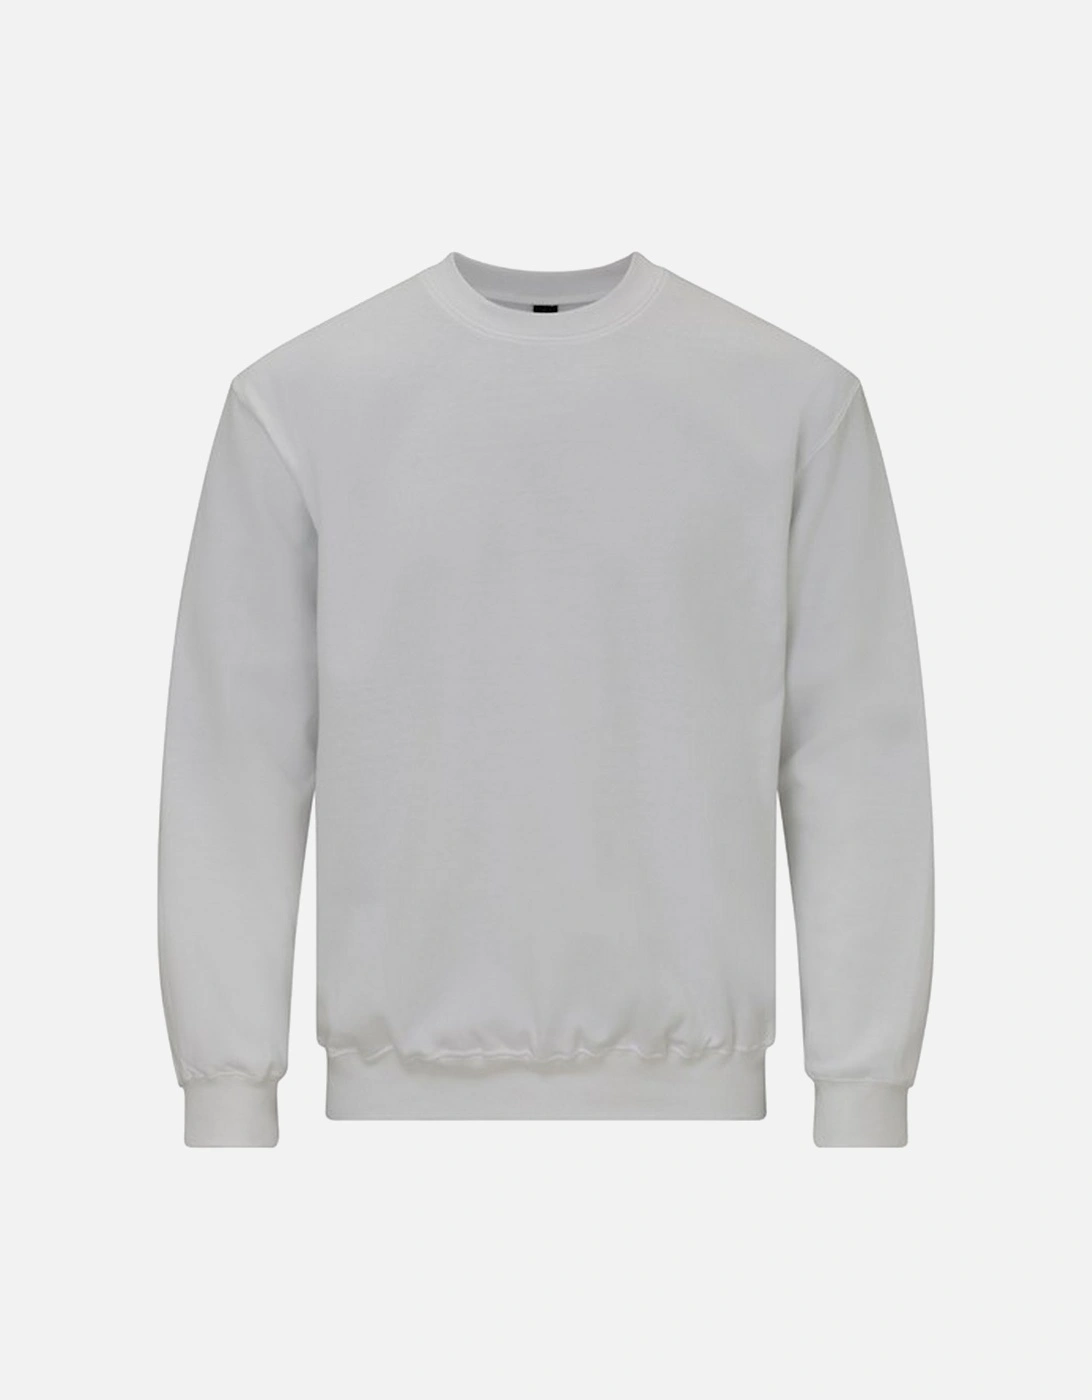 Unisex Adult Sweatshirt, 2 of 1